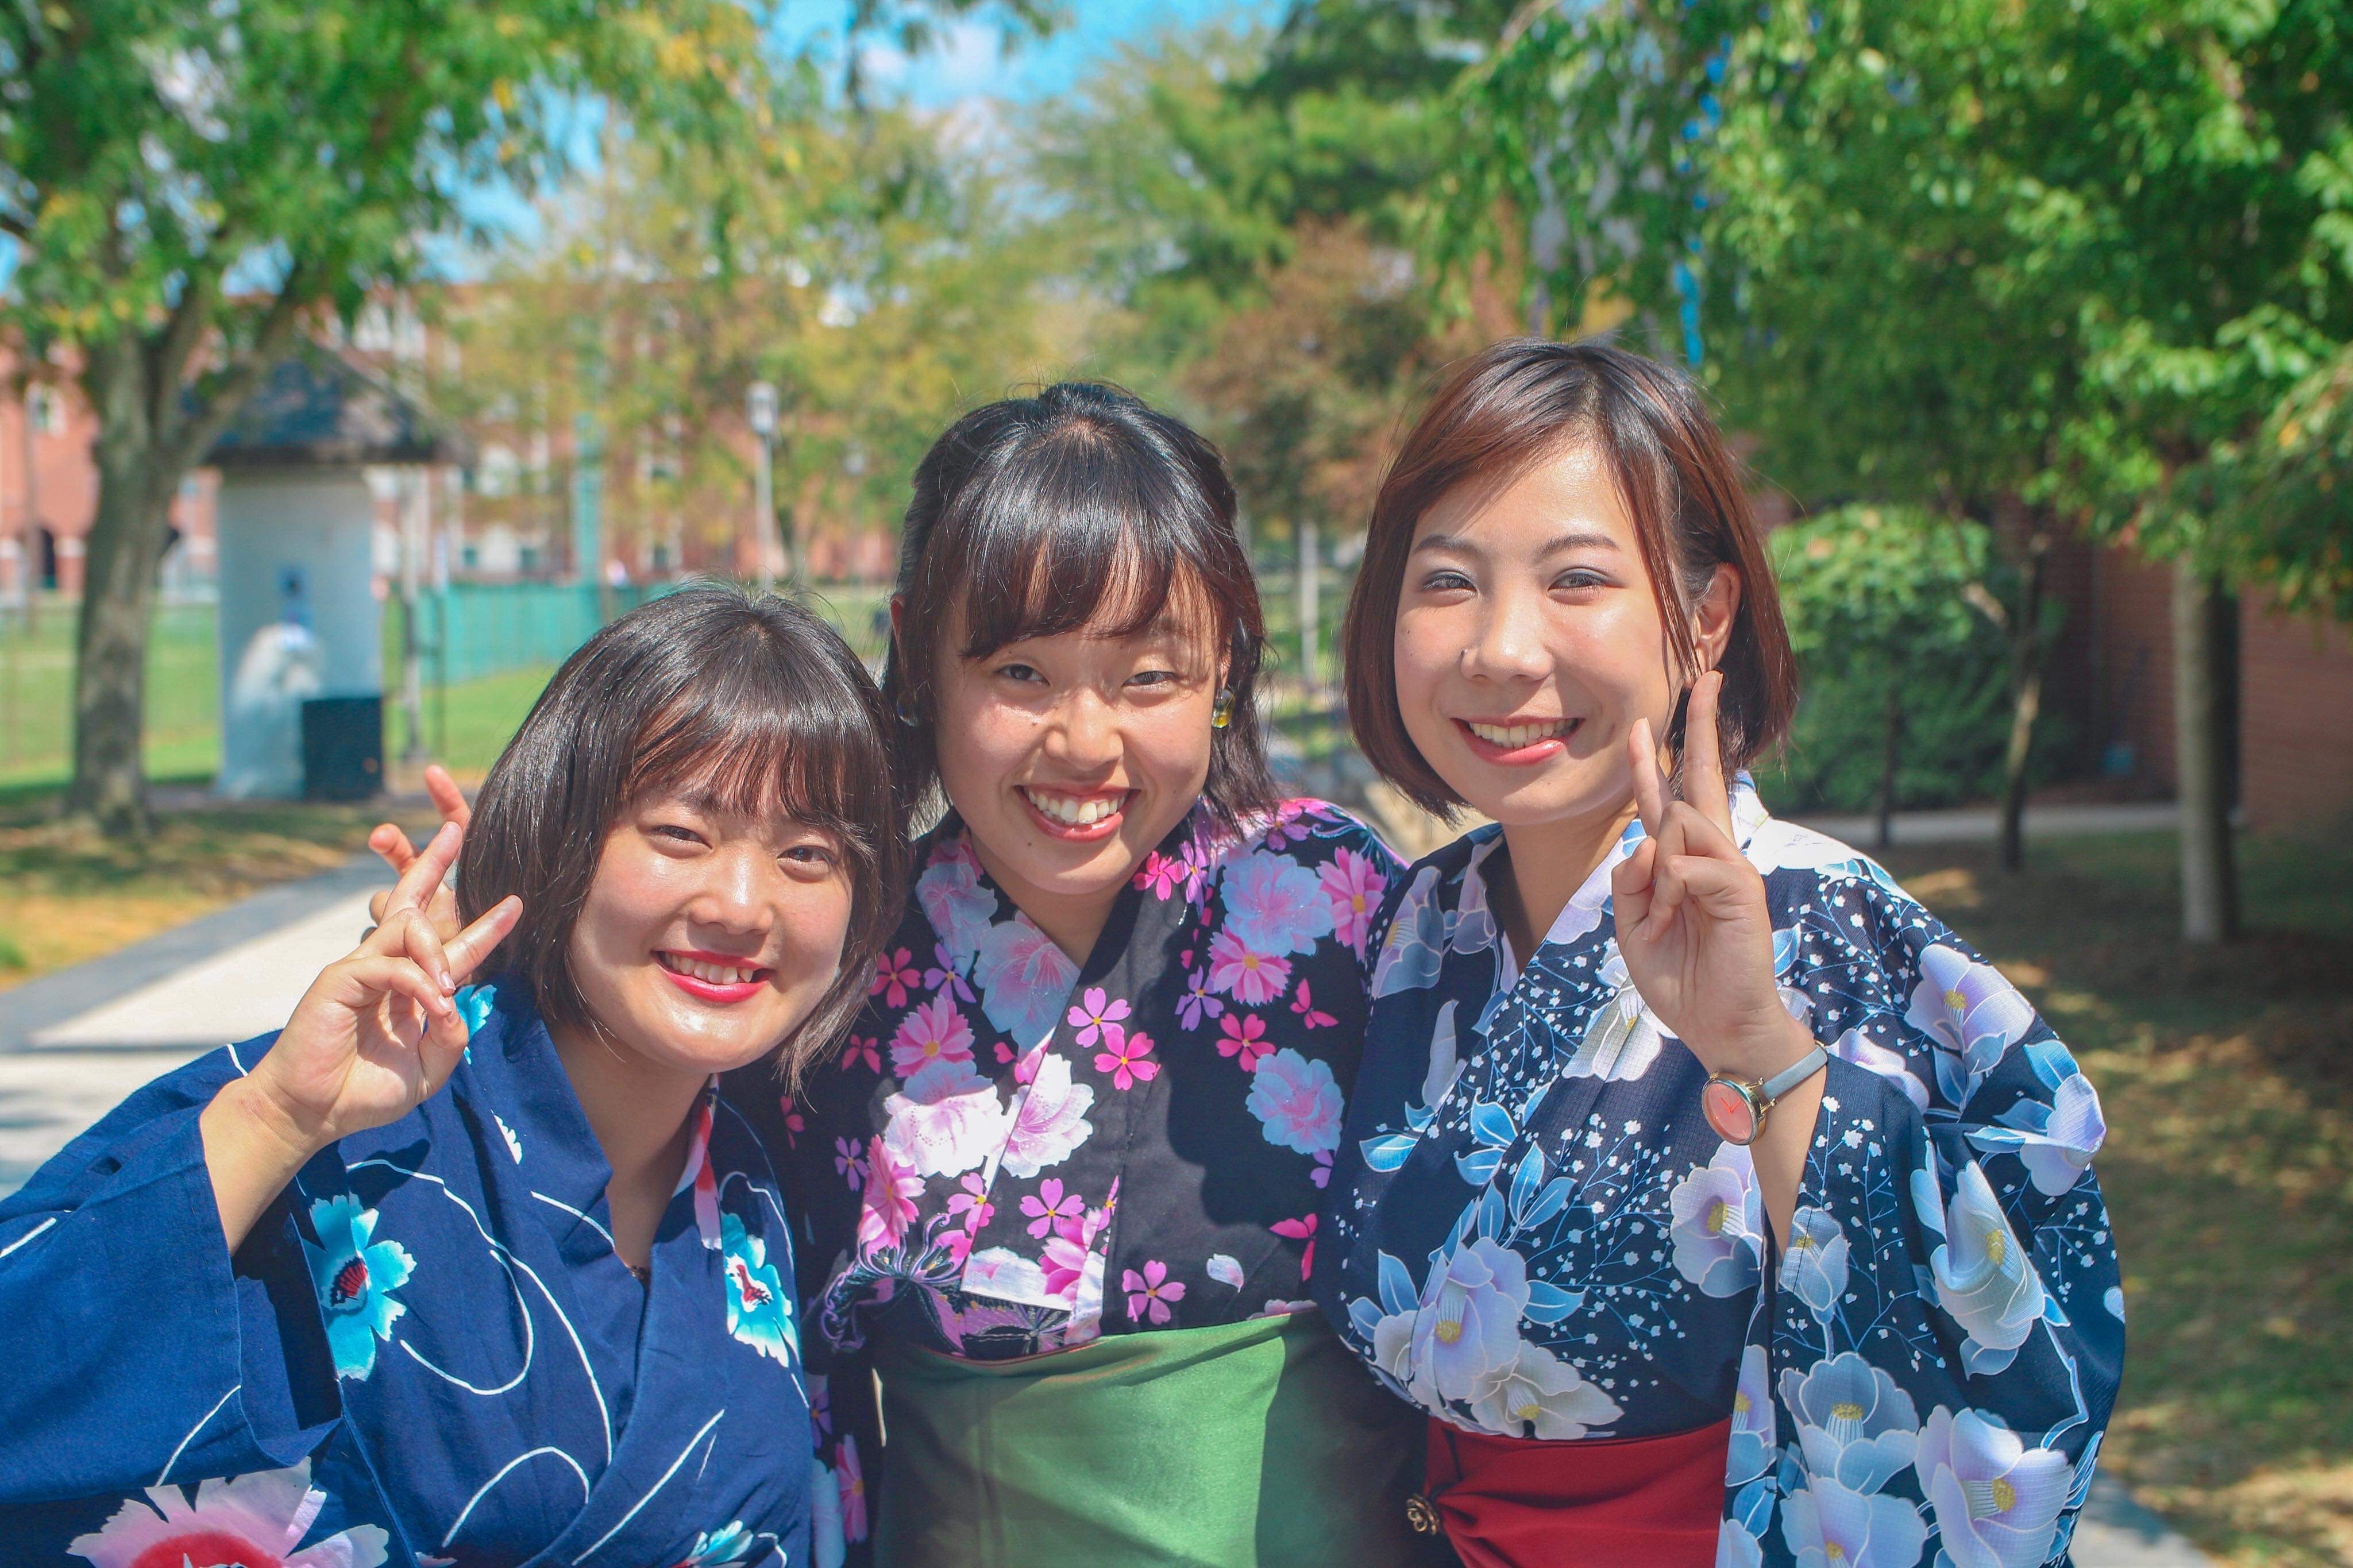 Miyu Isohata, Student (pictured in center)